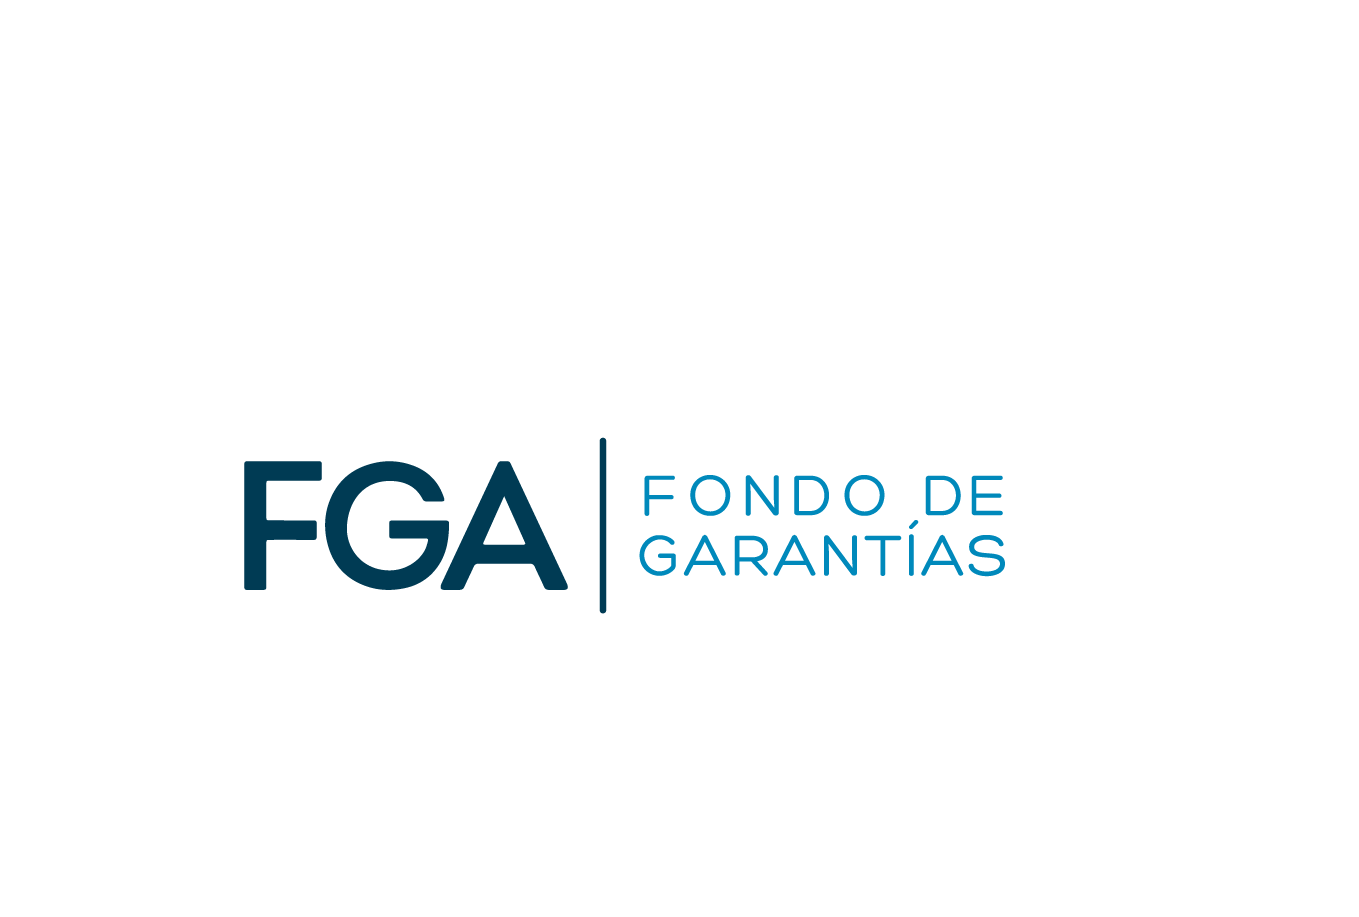 Durante 2022 FGA Fondo de Garantías respaldó $6,7 billones de pesos en créditos a cerca de un millón 800 mil colombianos